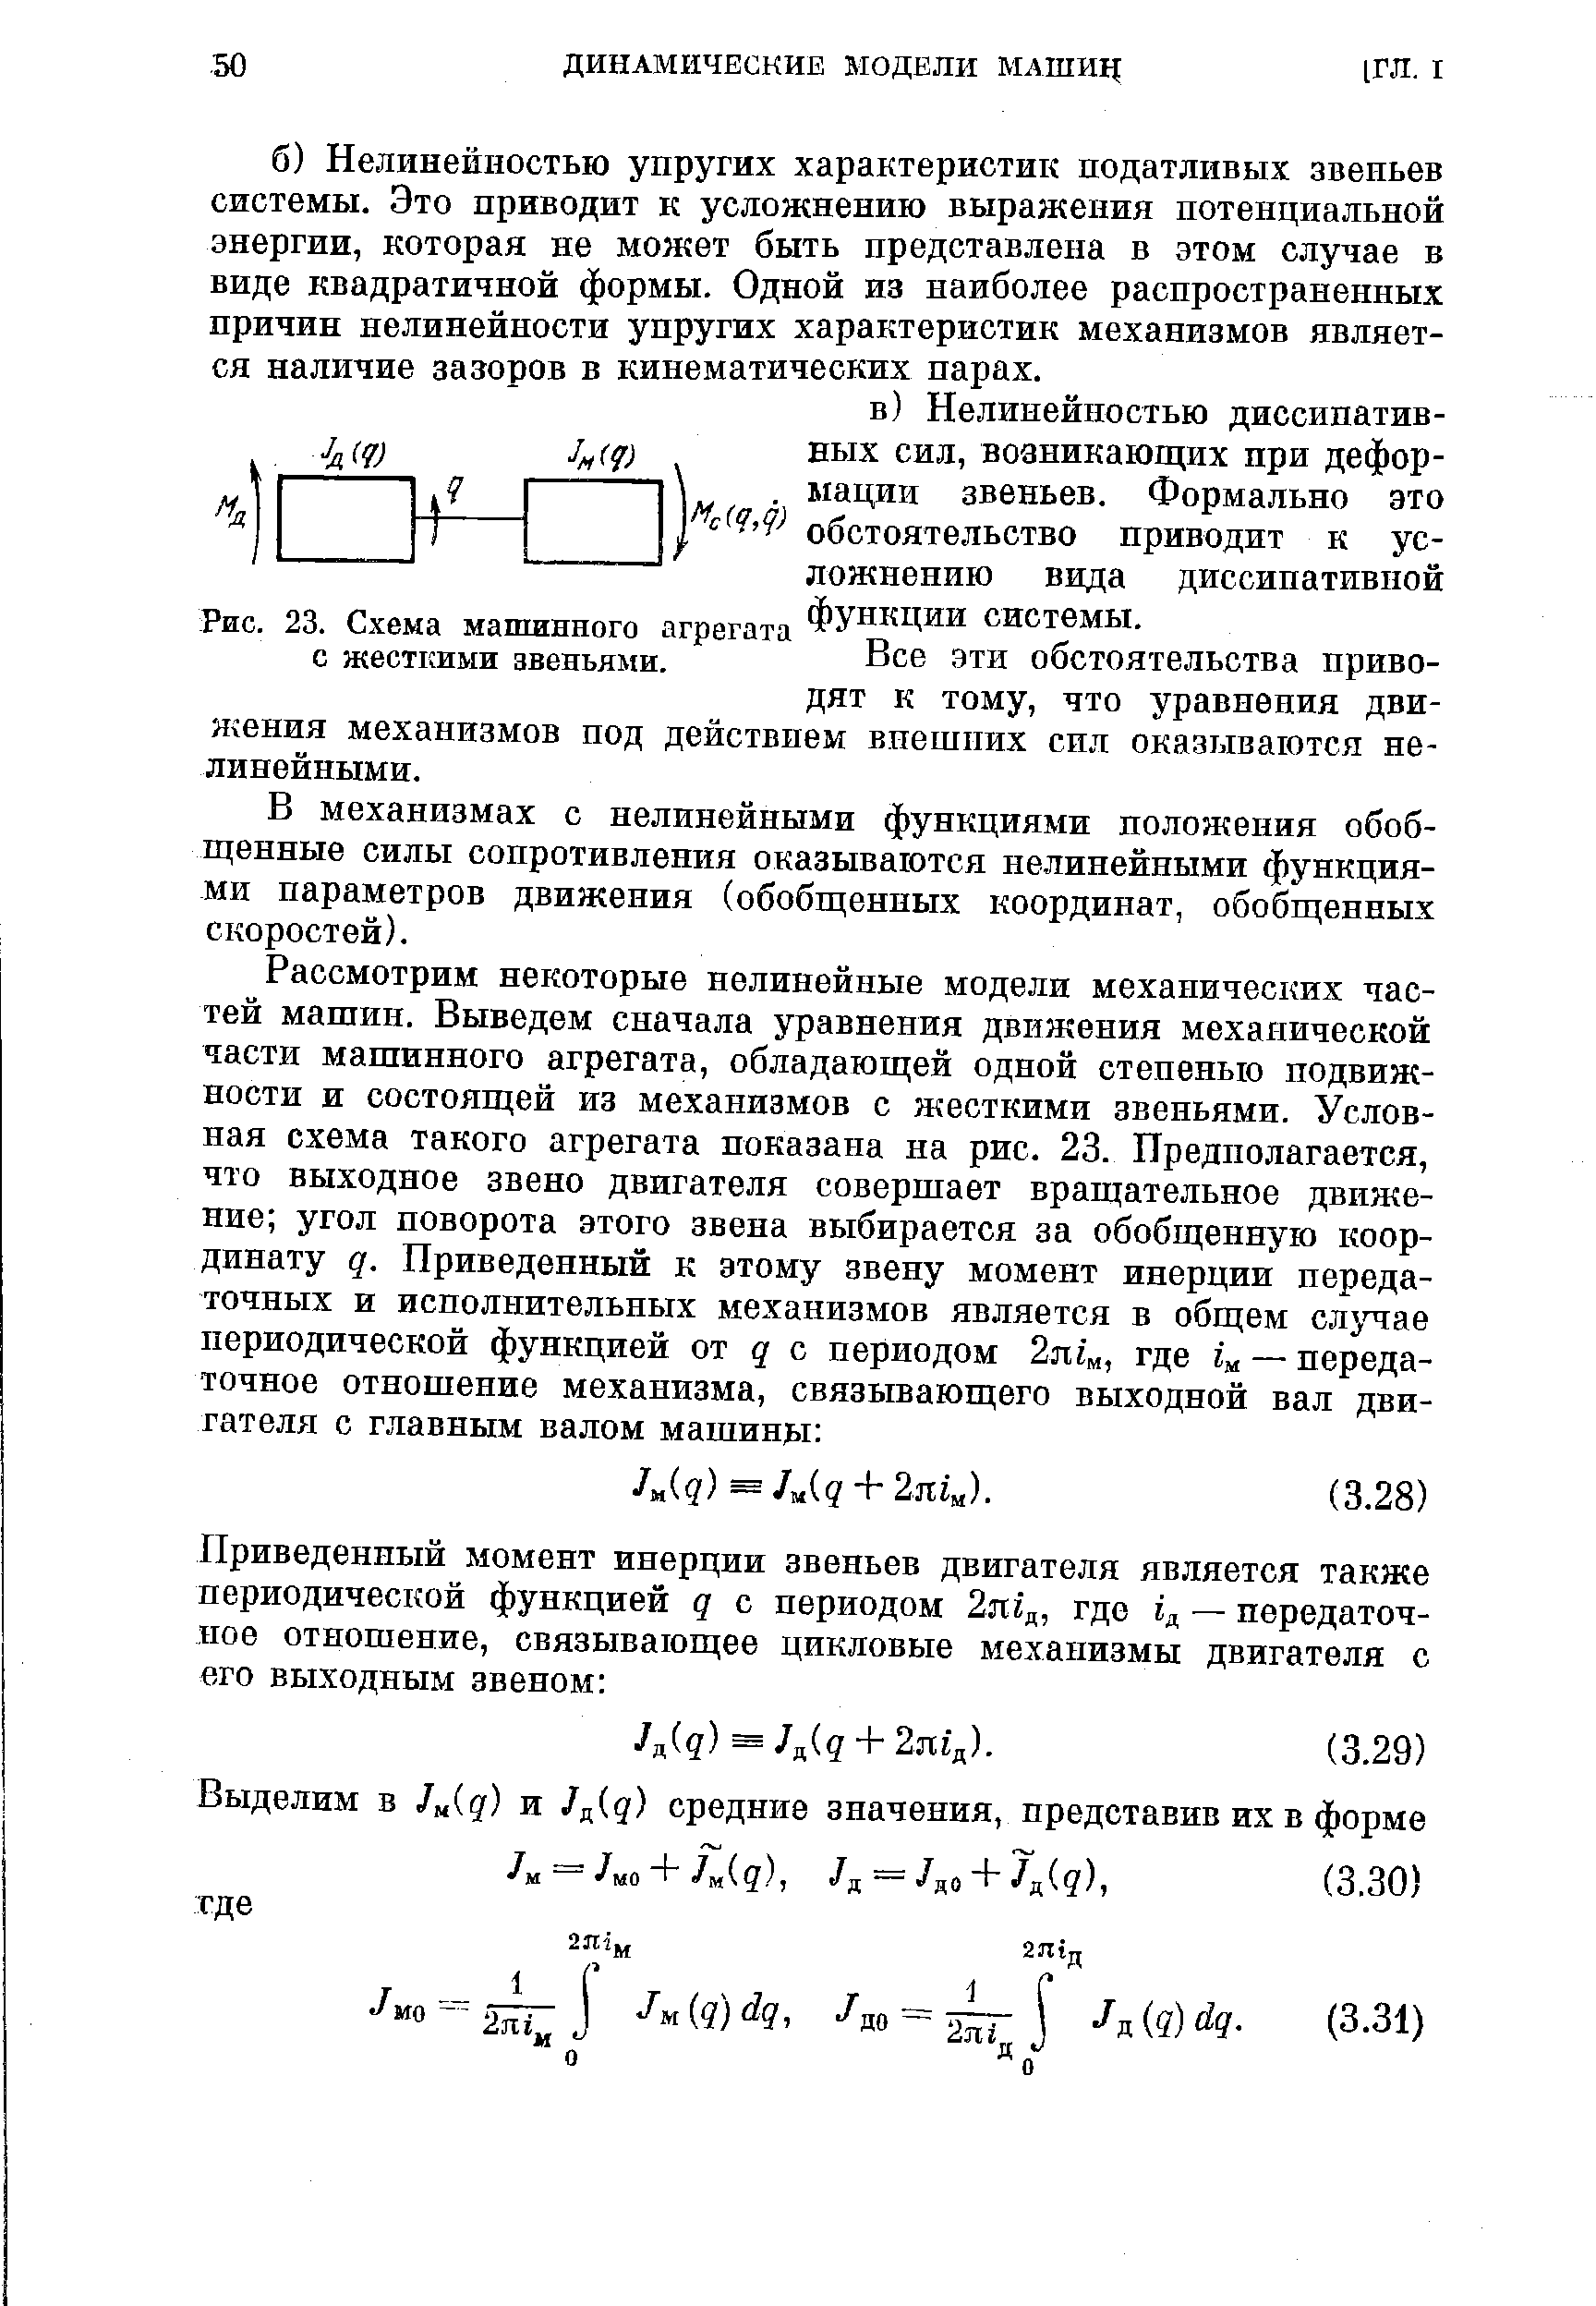 Рис. 23. Схема машинного агрегата ФУНКЦИИ системы.
